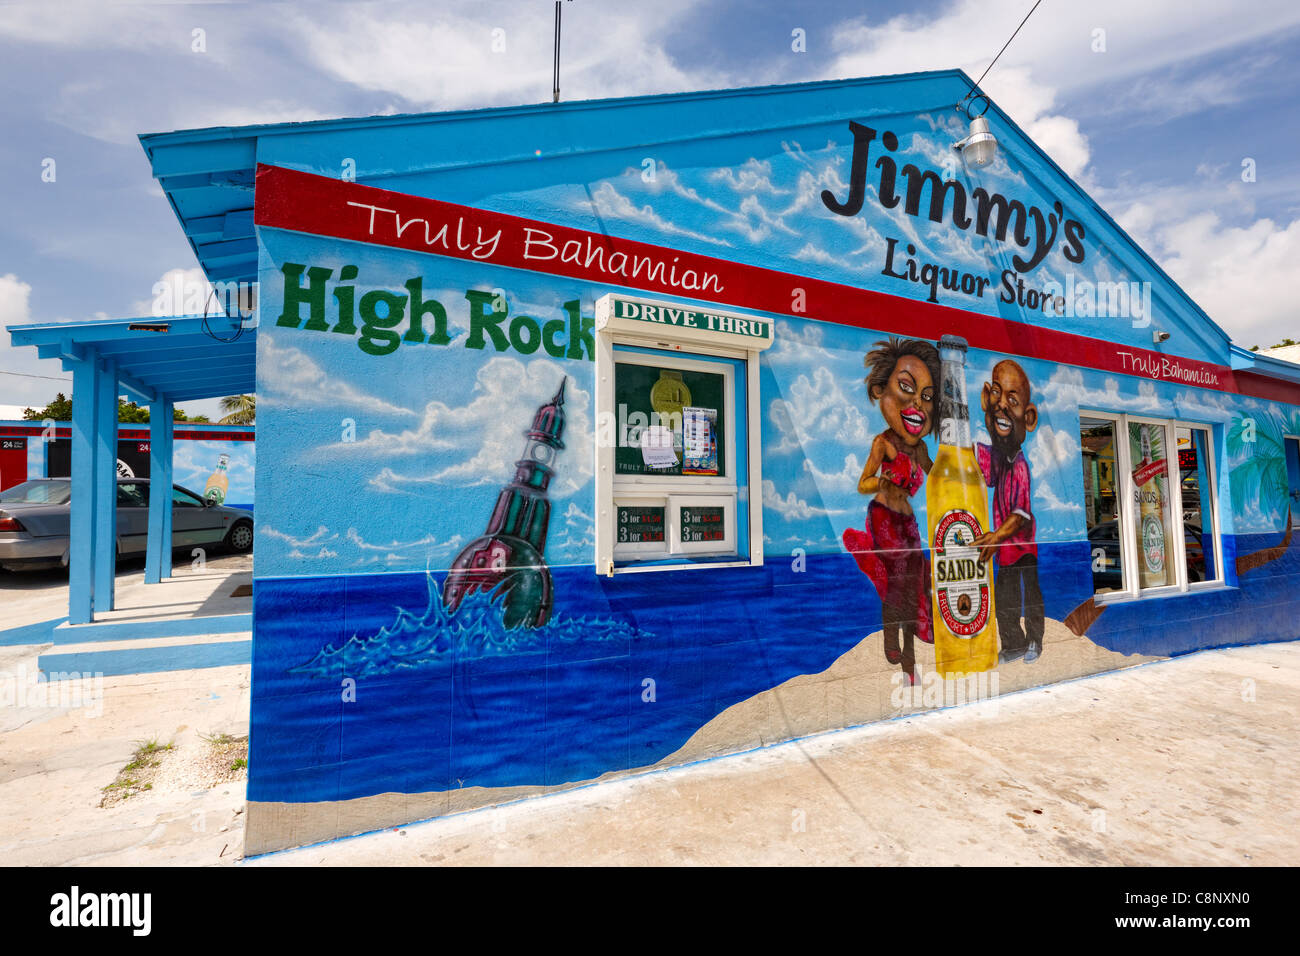 Jimmy's Liquor Store, Nassau, New Providence Island, Bahamas, Caribbean Stock Photo